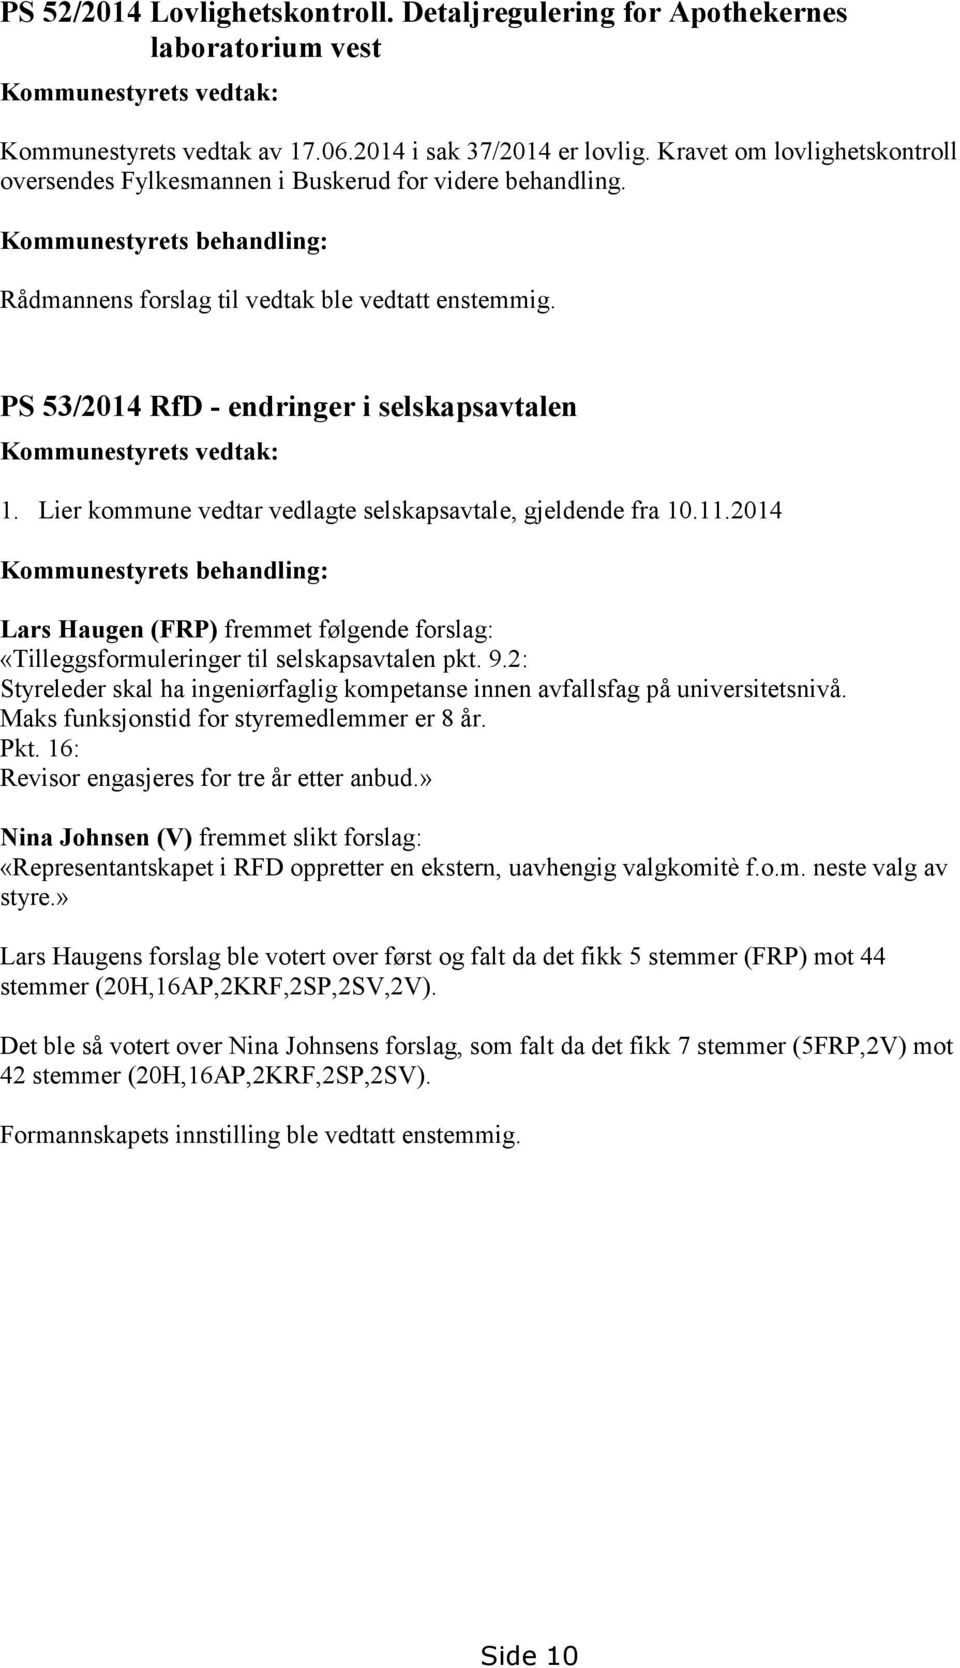 PS 53/2014 RfD - endringer i selskapsavtalen Kommunestyrets vedtak: 1. Lier kommune vedtar vedlagte selskapsavtale, gjeldende fra 10.11.